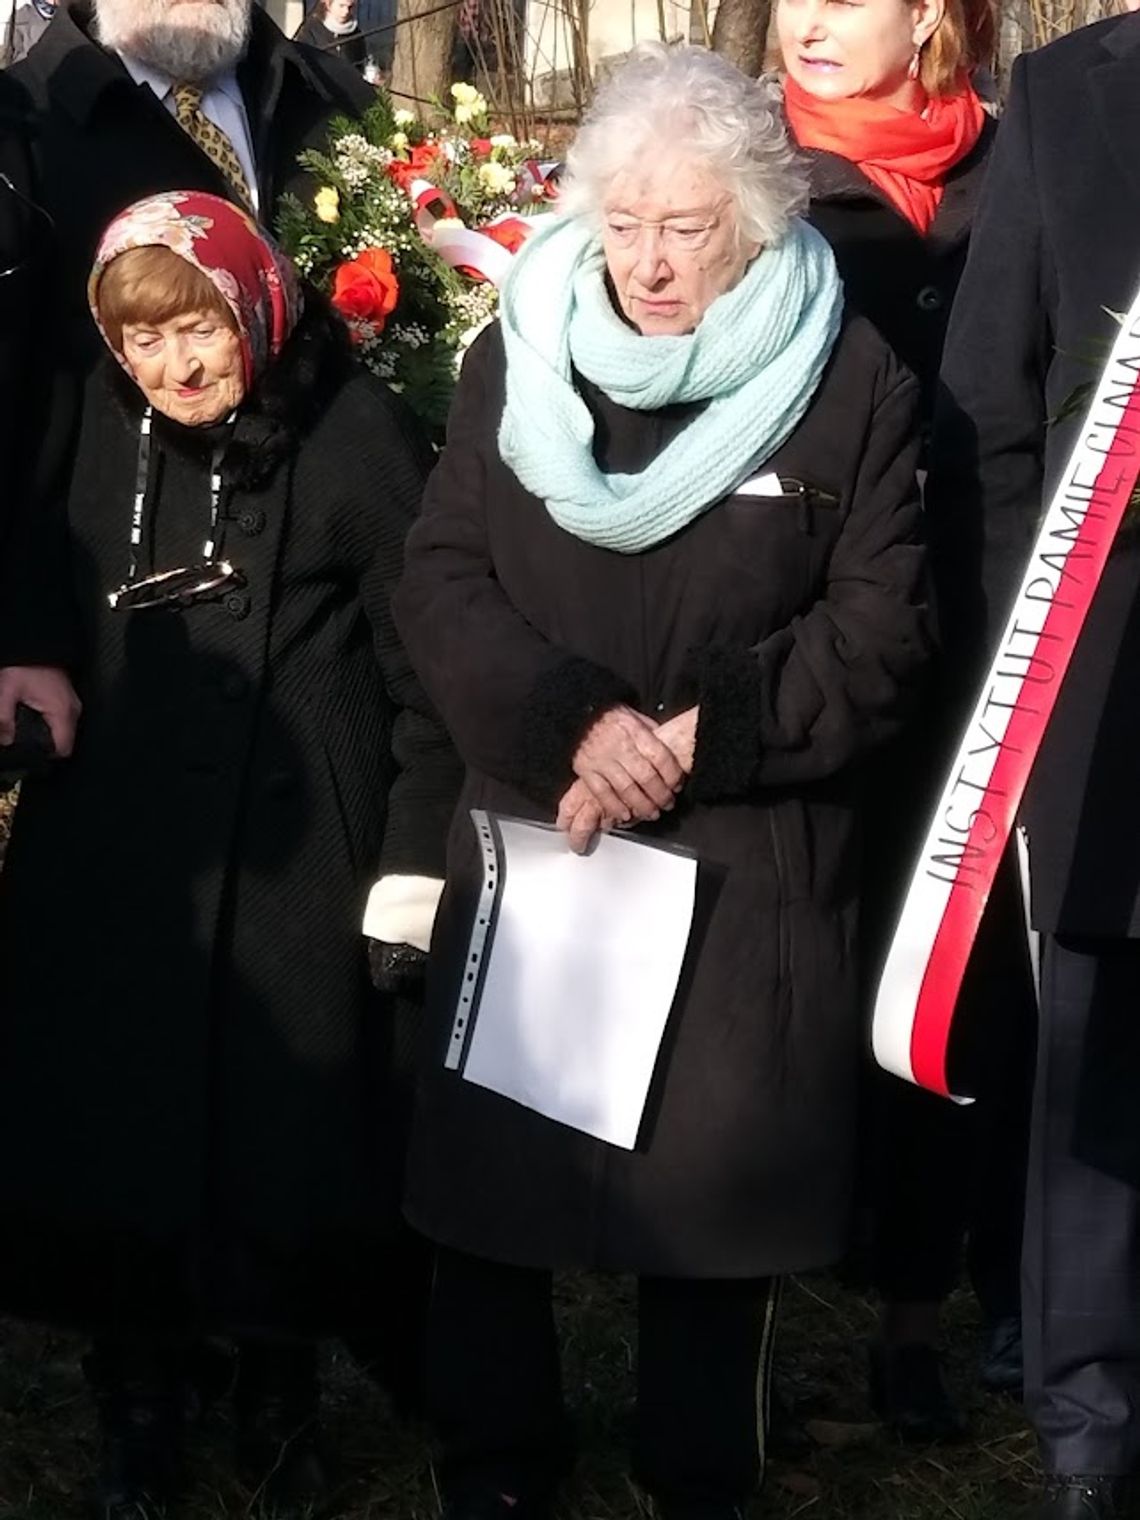 Nie żyje Lucia Retman - ocalona z Holokaustu, wielka przyjaciółka Polski i Polaków